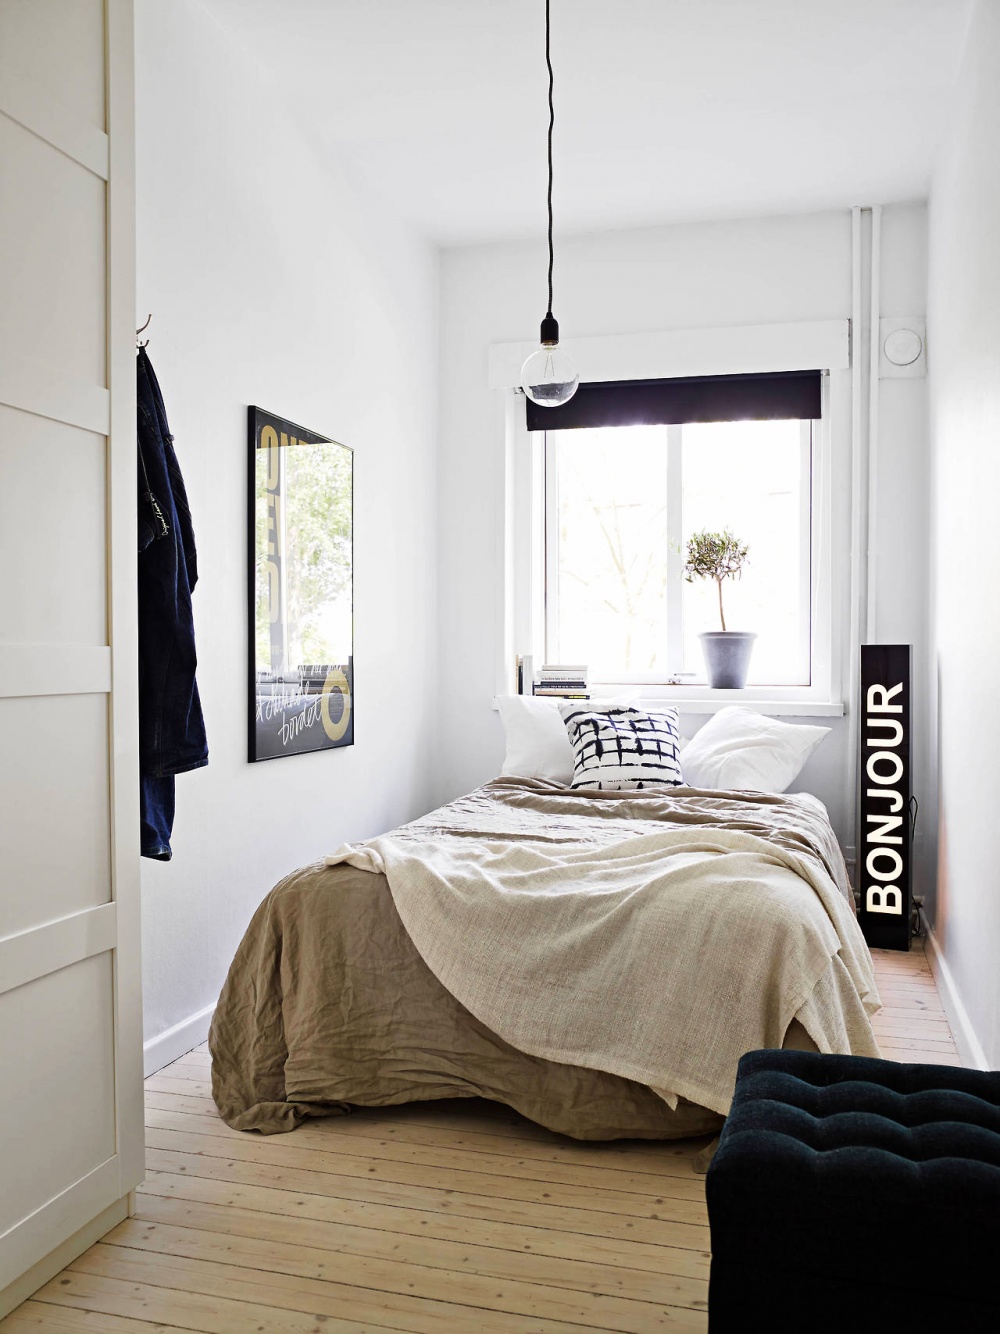 Hình ảnh phòng ngủ nhỏ phong cách tối giản với ga gối màu trắng chủ đạo, tranh treo tường, cửa sổ đầu giường